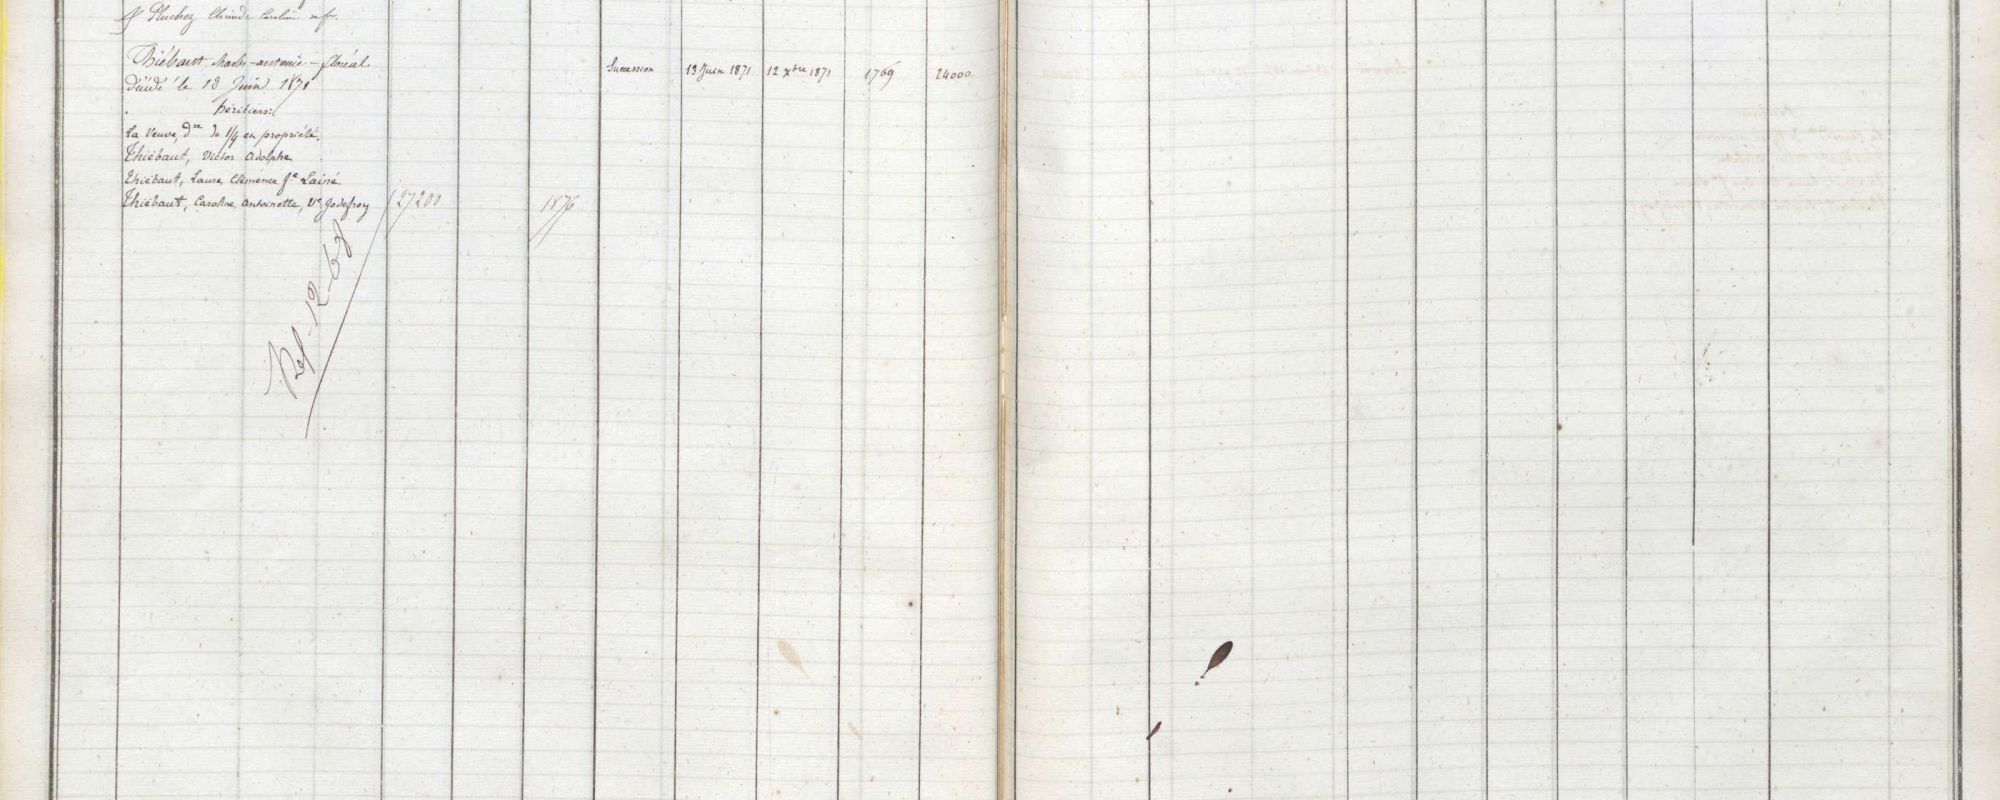 Sommier foncier (1ère série) 1 à 85, 32 à 90 rue d'Hauteville, 3e arrondissement ancien, 1809-1859. Archives de Paris, DQ18 150.